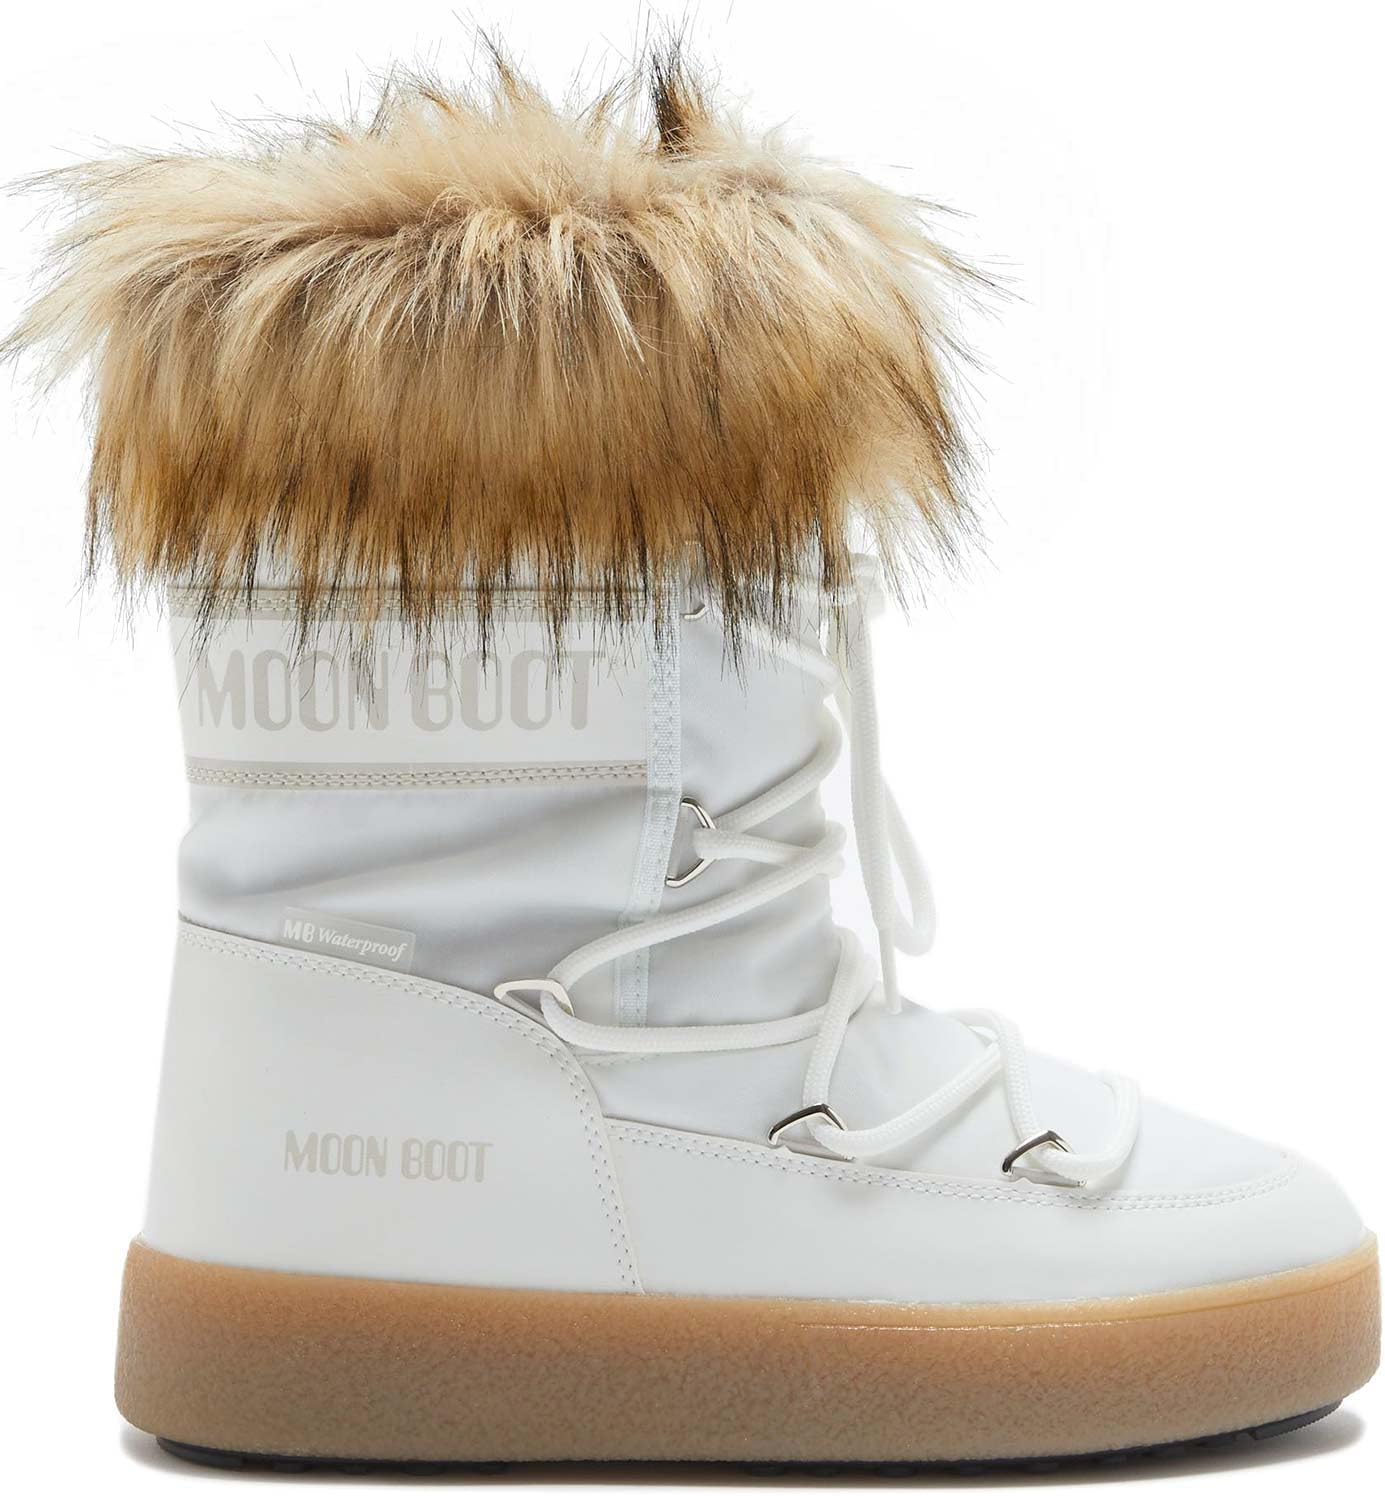 Moon Boot, quali modelli comprare per godersi la neve senza rischiare l'ibernazione